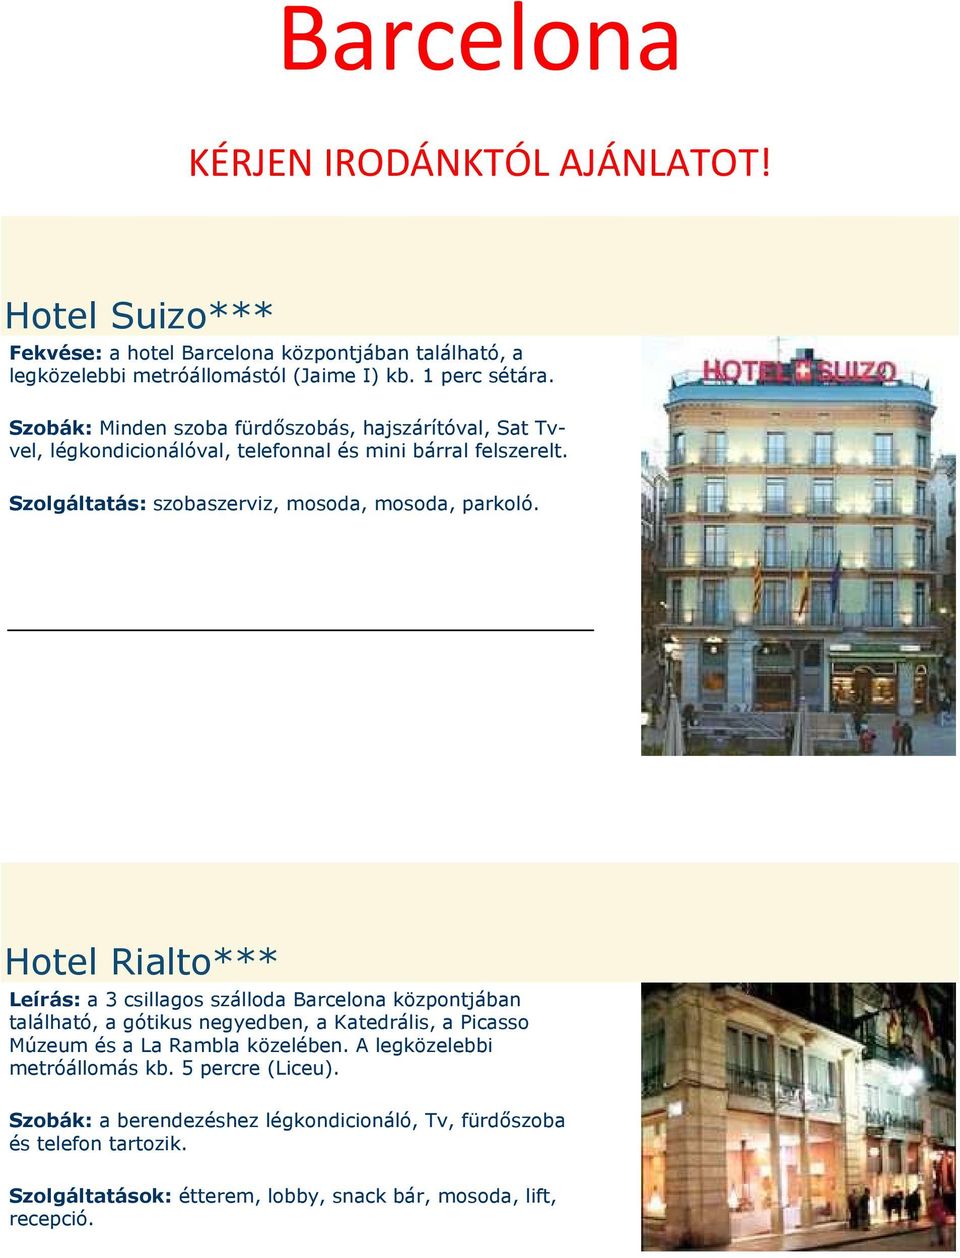 Hotel Rialto*** Leírás: a 3 csillagos szálloda Barcelona központjában található, a gótikus negyedben, a Katedrális, a Picasso Múzeum és a La Rambla közelében.